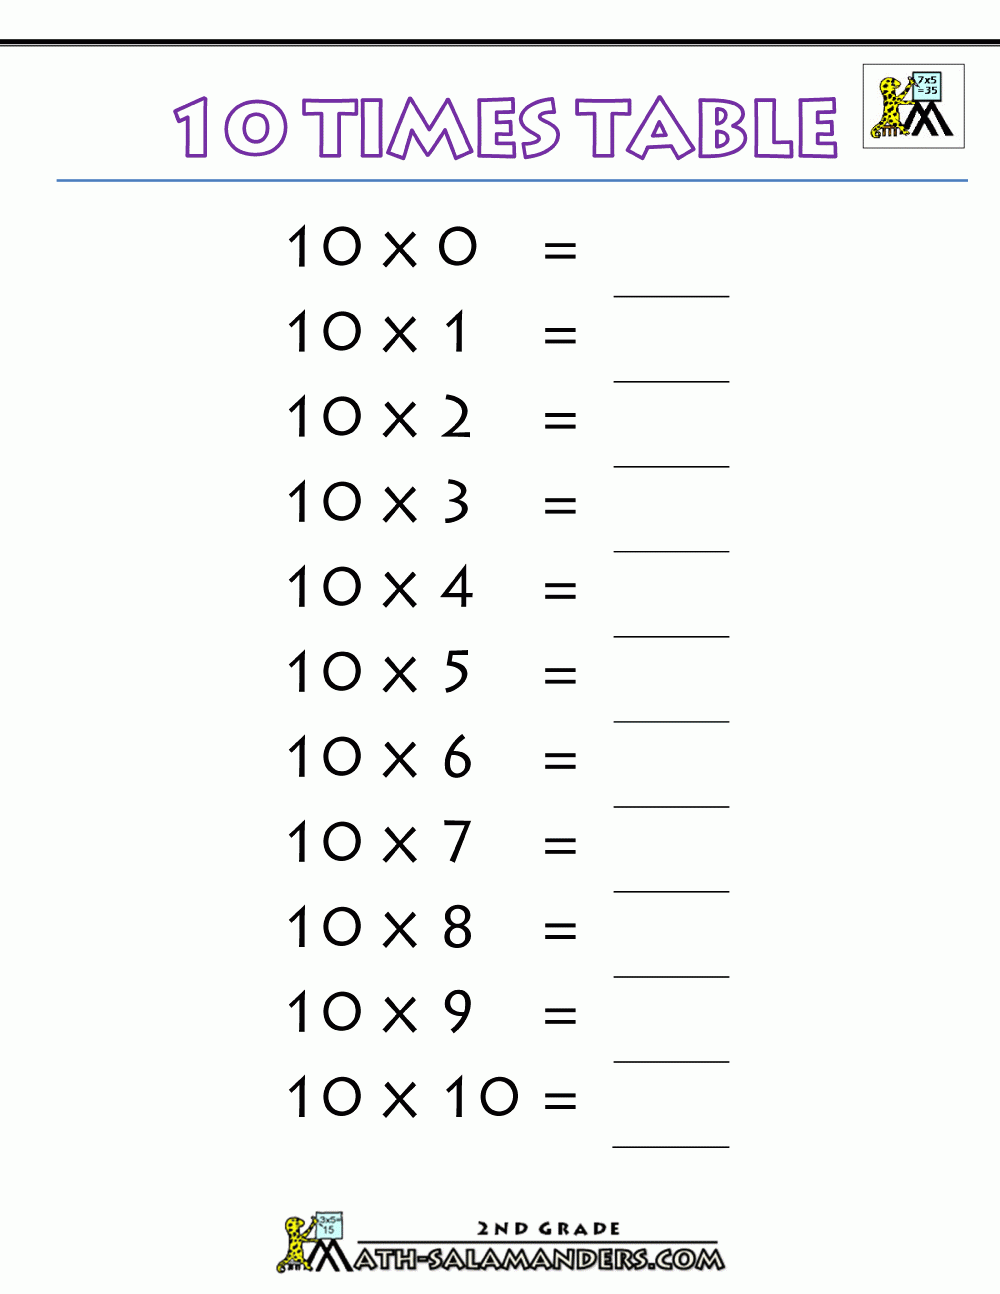 Printable-Multiplication-Charts-10-Times-Table-Printable